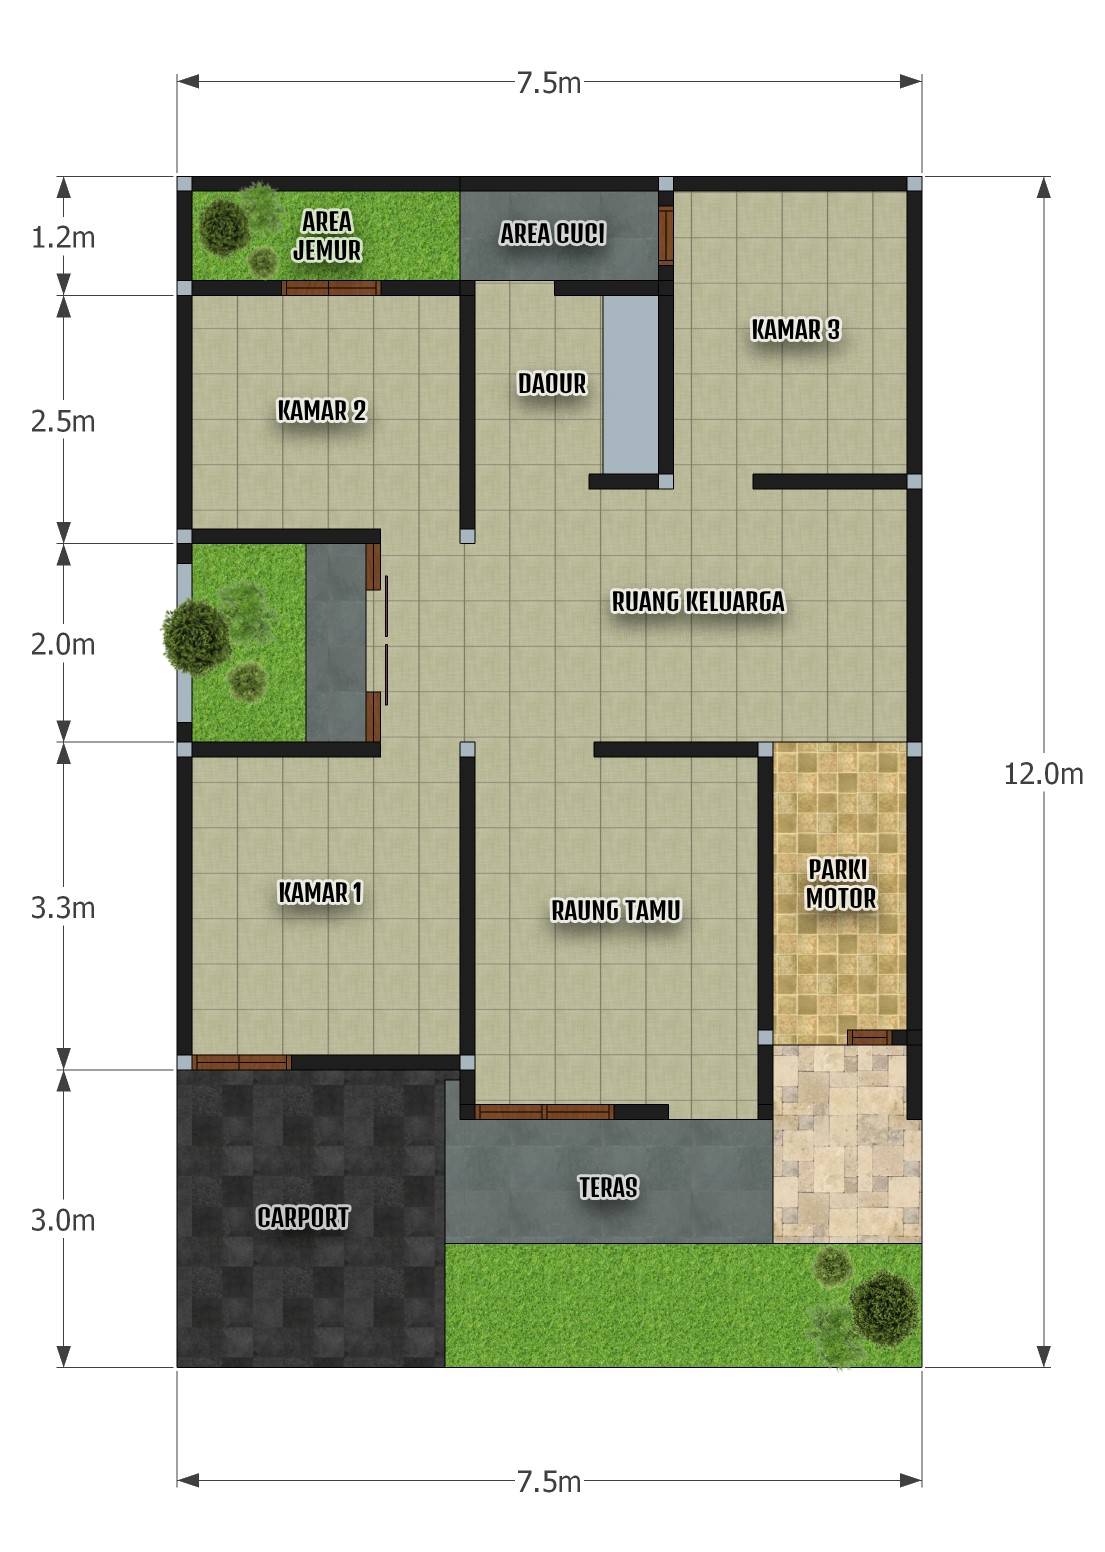 Rumah minimalis 7.5x12 3 Kamar Tidur - DESAIN RUMAH MINIMALIS - Denah Rumah Ukuran 8x12 Kamar 4